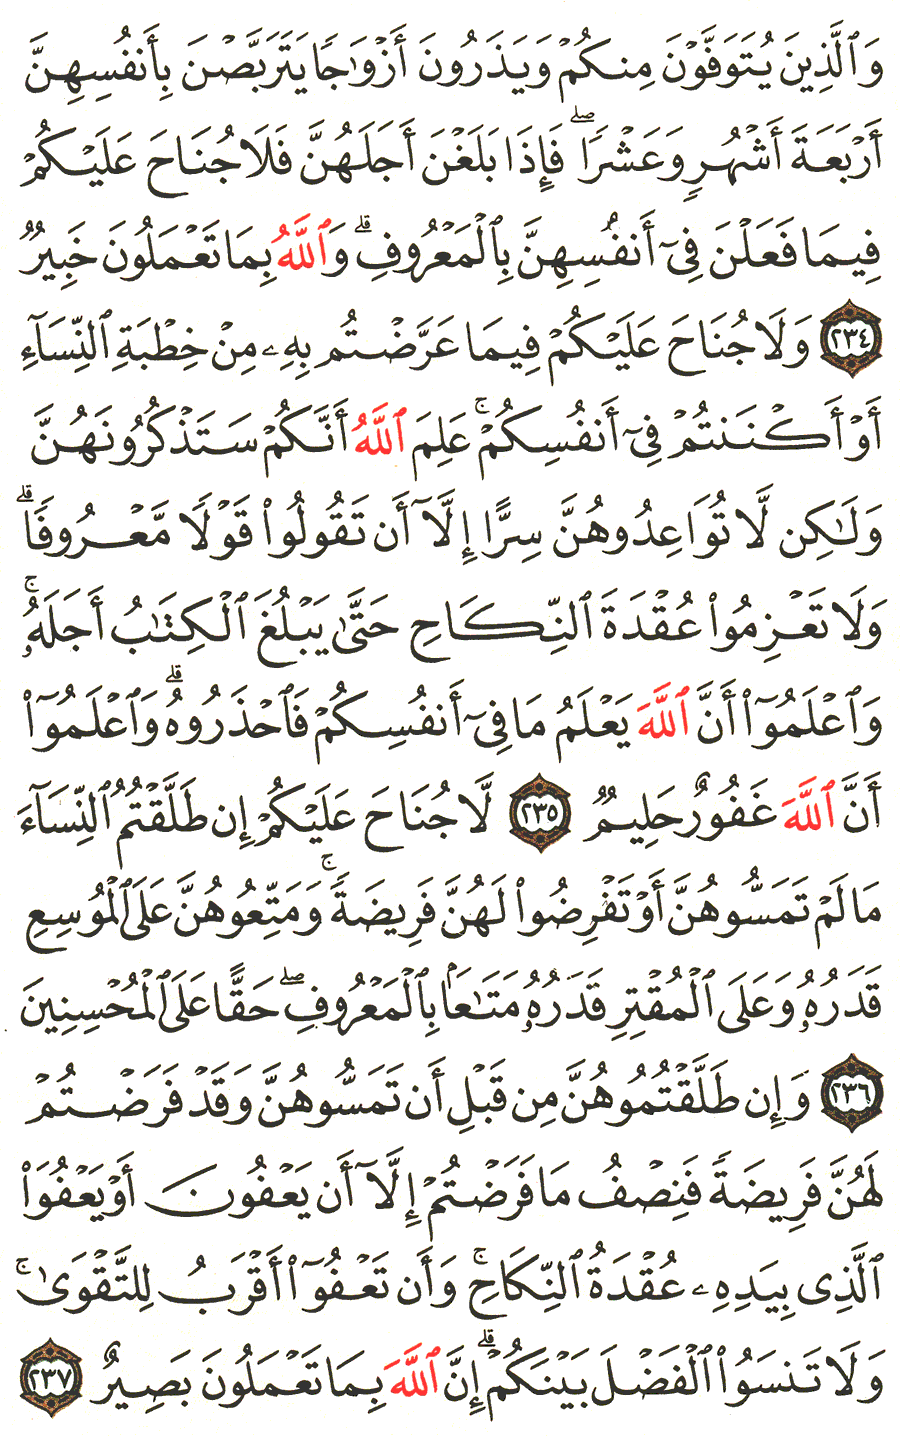 الصفحة رقم  38 من القرآن الكريم مكتوبة من المصحف